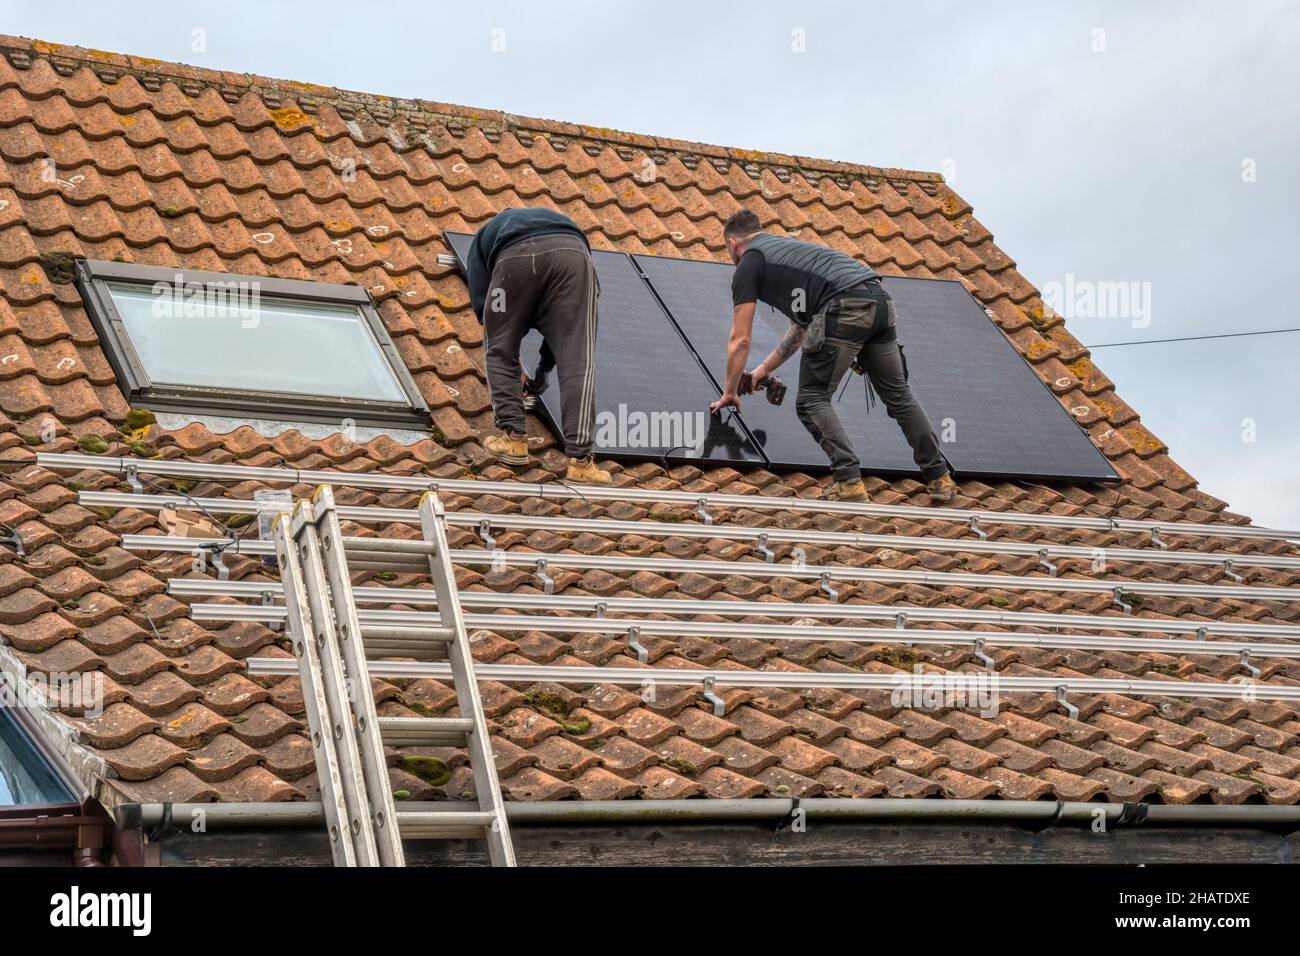 Les travailleurs qui installent des panneaux solaires ou des cellules photovoltaïques sur le toit en tuiles pantiées d'un chalet de Norfolk.NB: Les locaux dans la photographie sont la propriété libérée. Banque D'Images